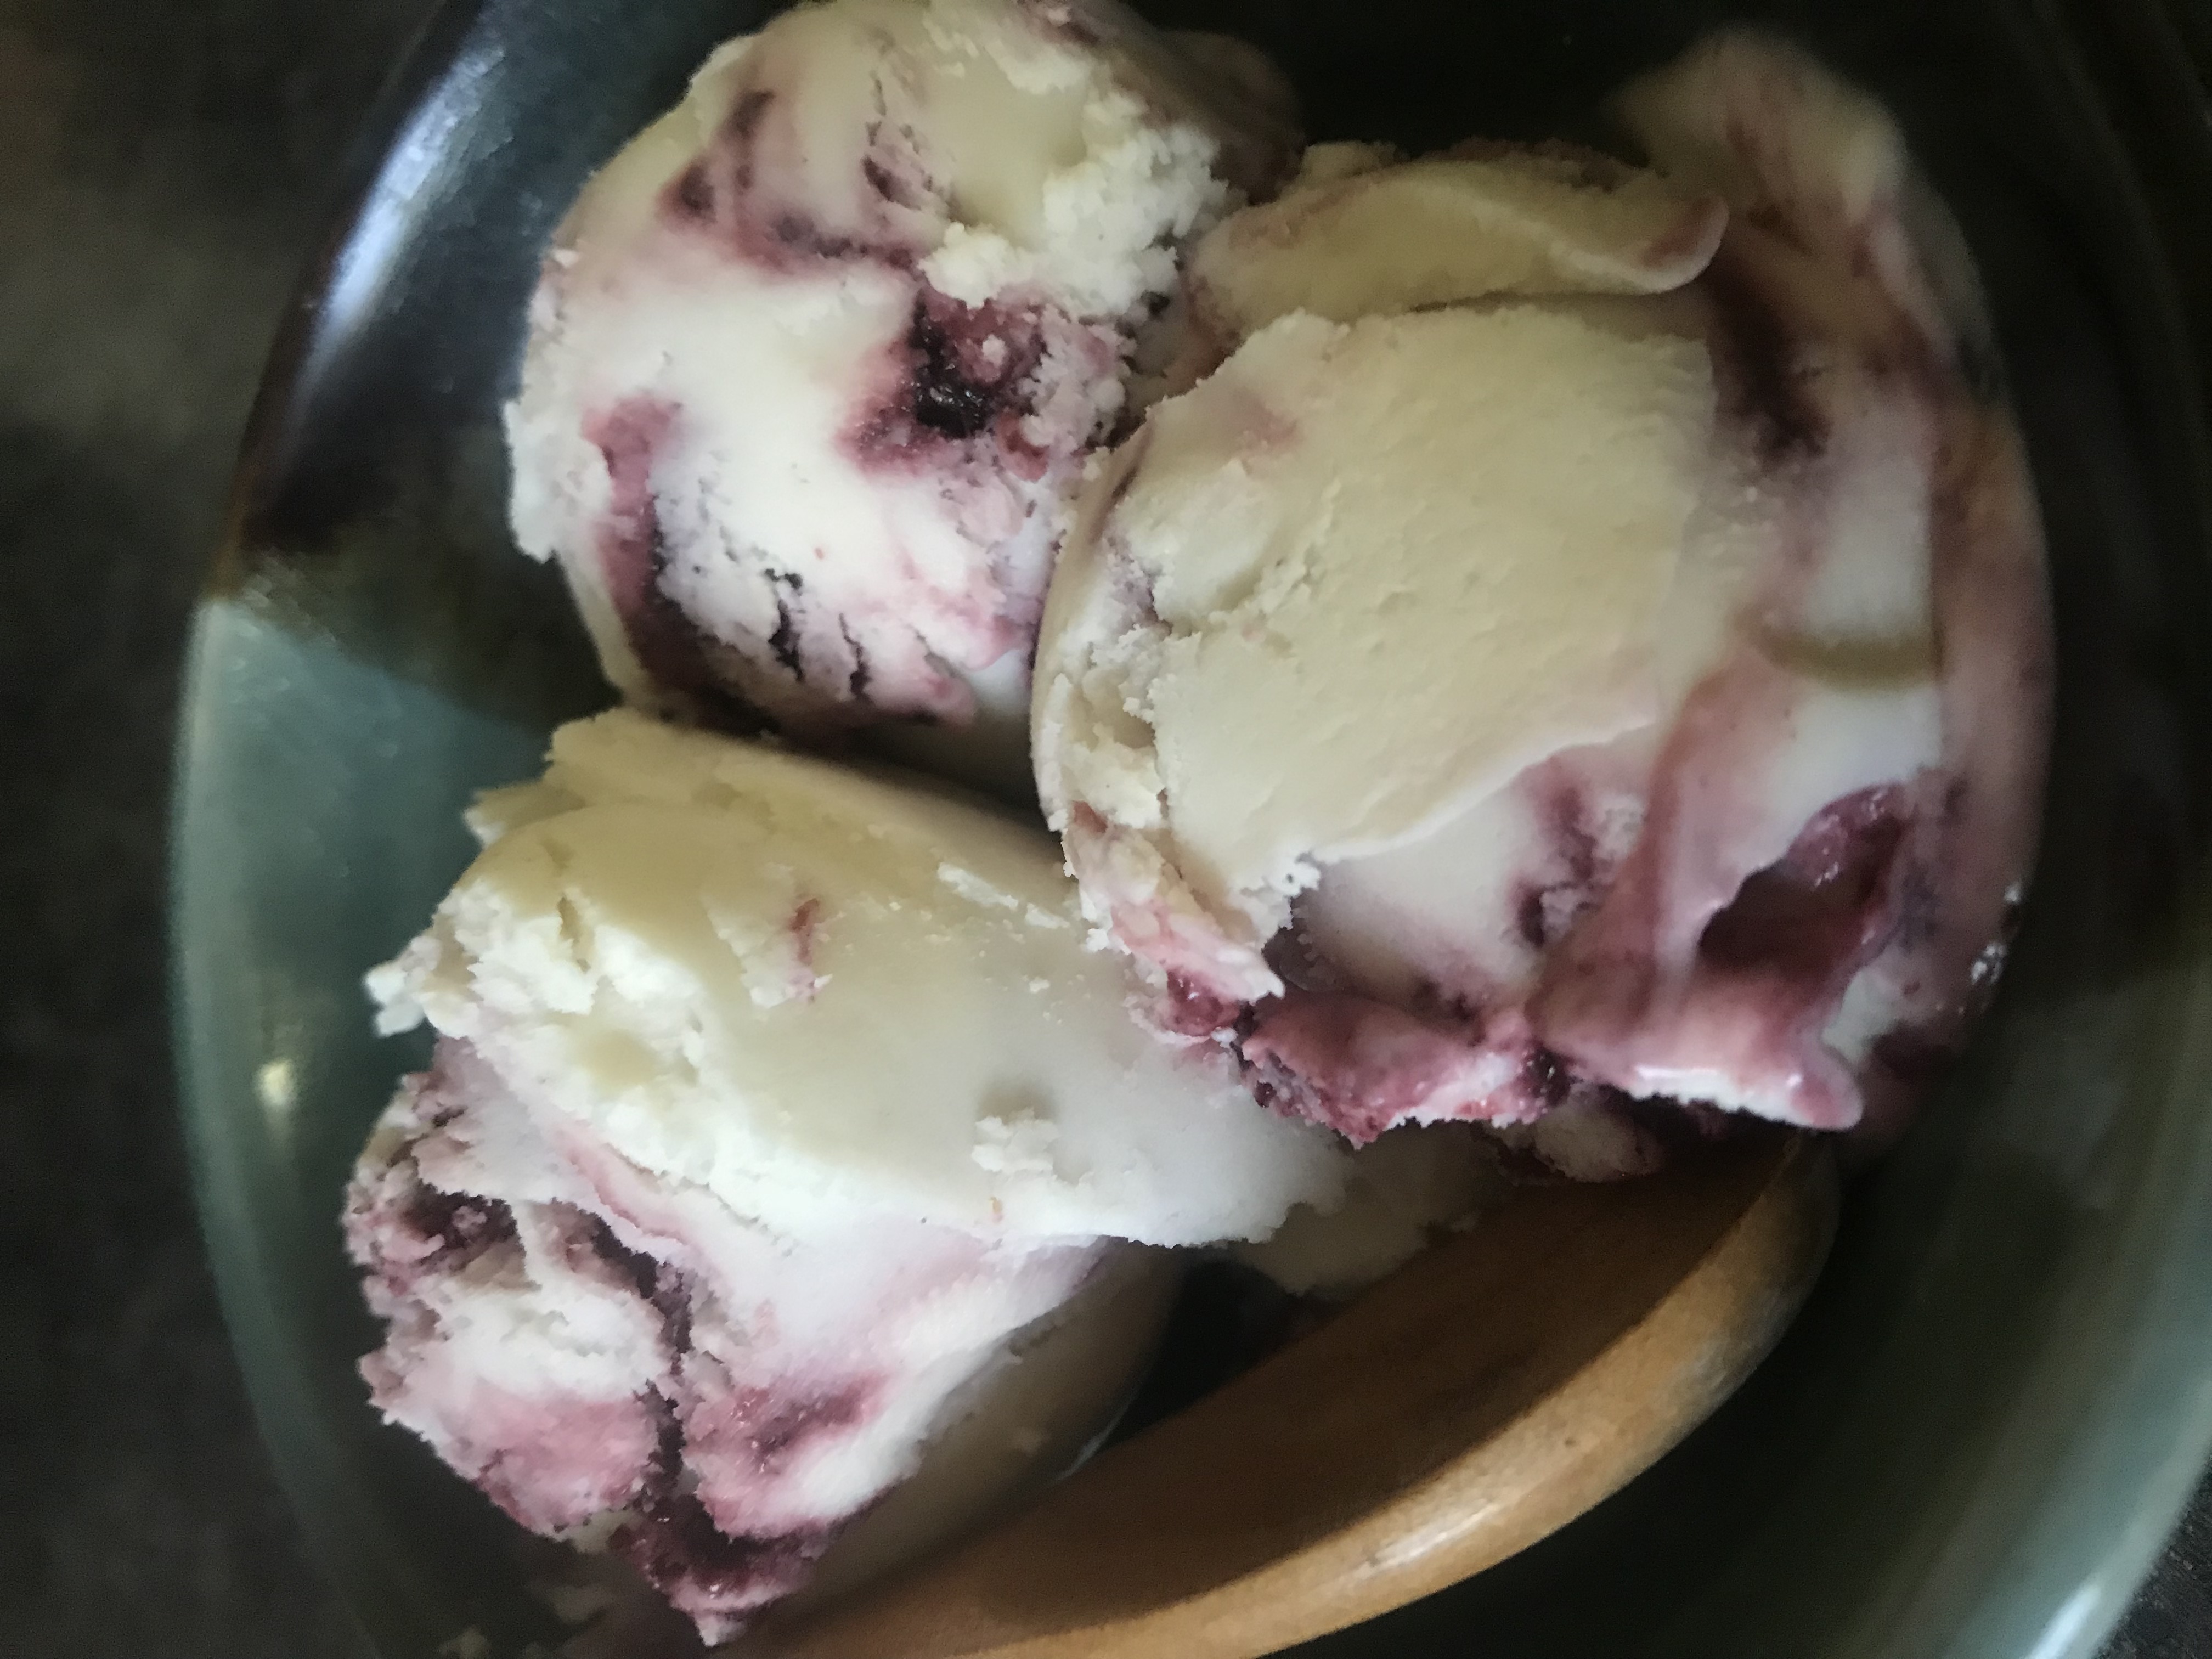 Raw Cultured Cherry Cheesecake Ice cream